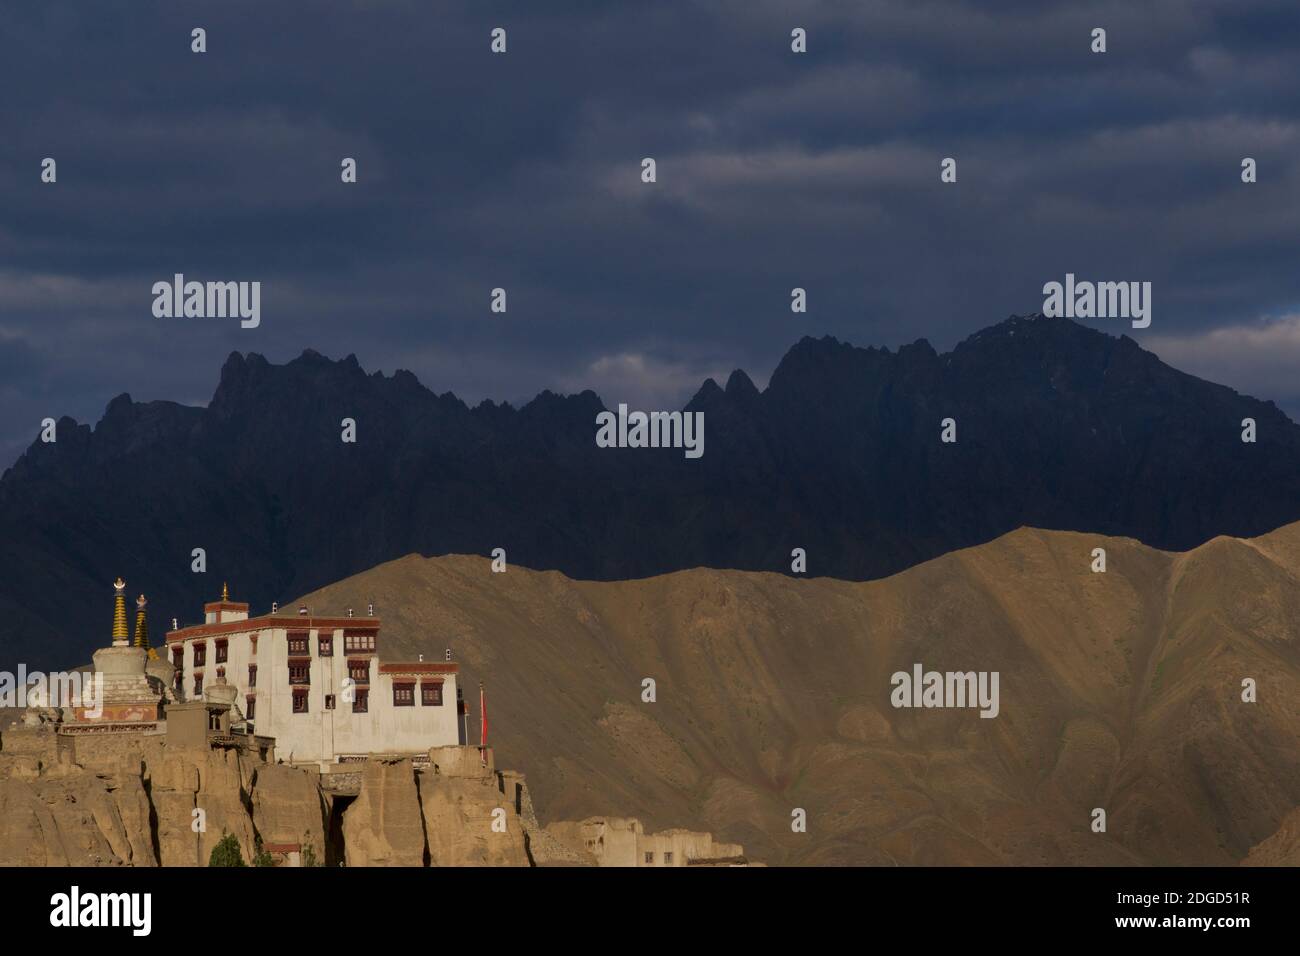 Monastero di Lamayuru arroccato su una collina che domina la città di Lamayouro, il distretto di Leh, Ladakh, Jammu e Kashmir, India settentrionale. Luce del sole nel tardo pomeriggio. Foto Stock